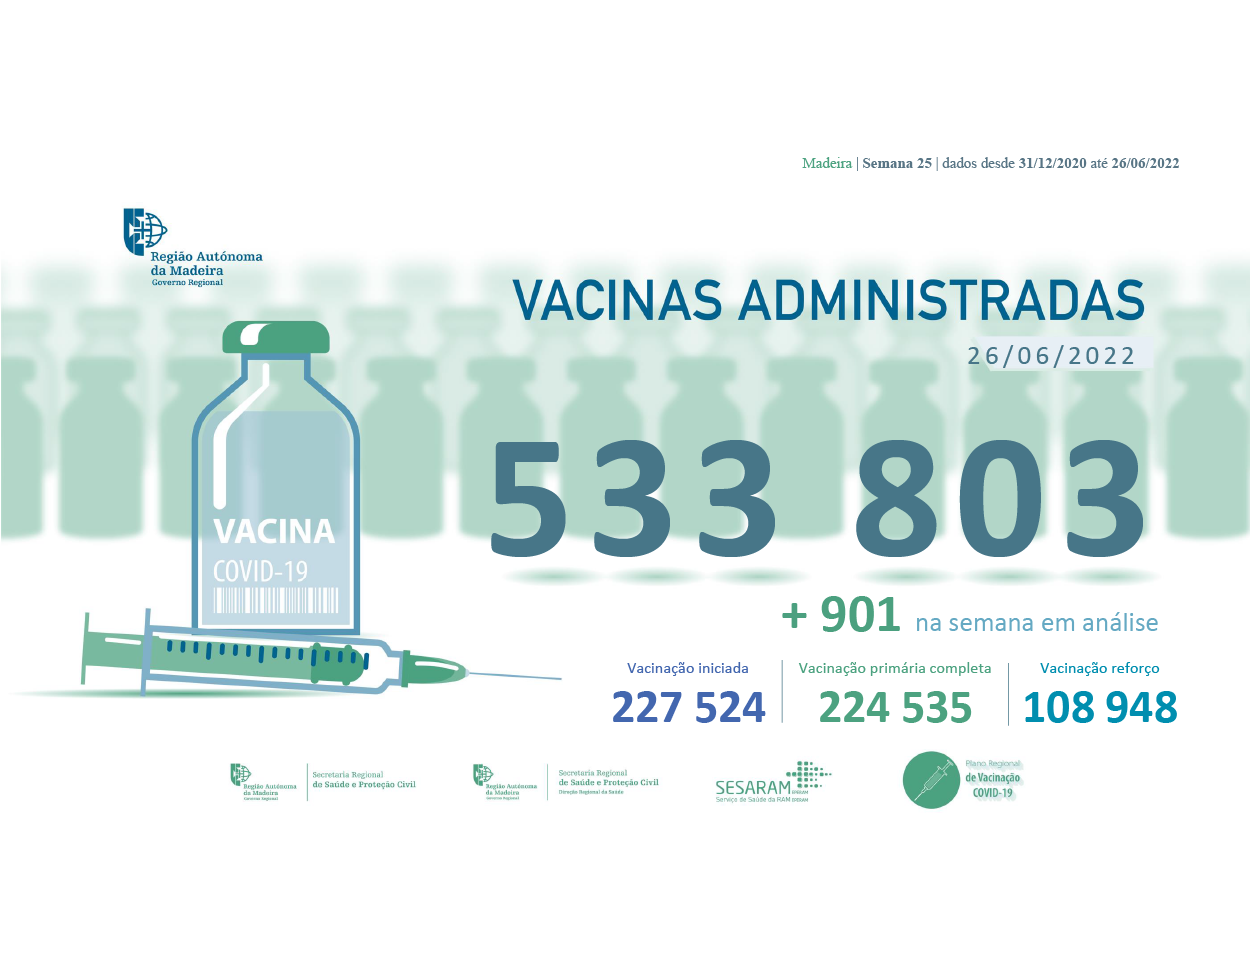 Administradas mais de 533 803 vacinas contra a COVID-19 na RAM